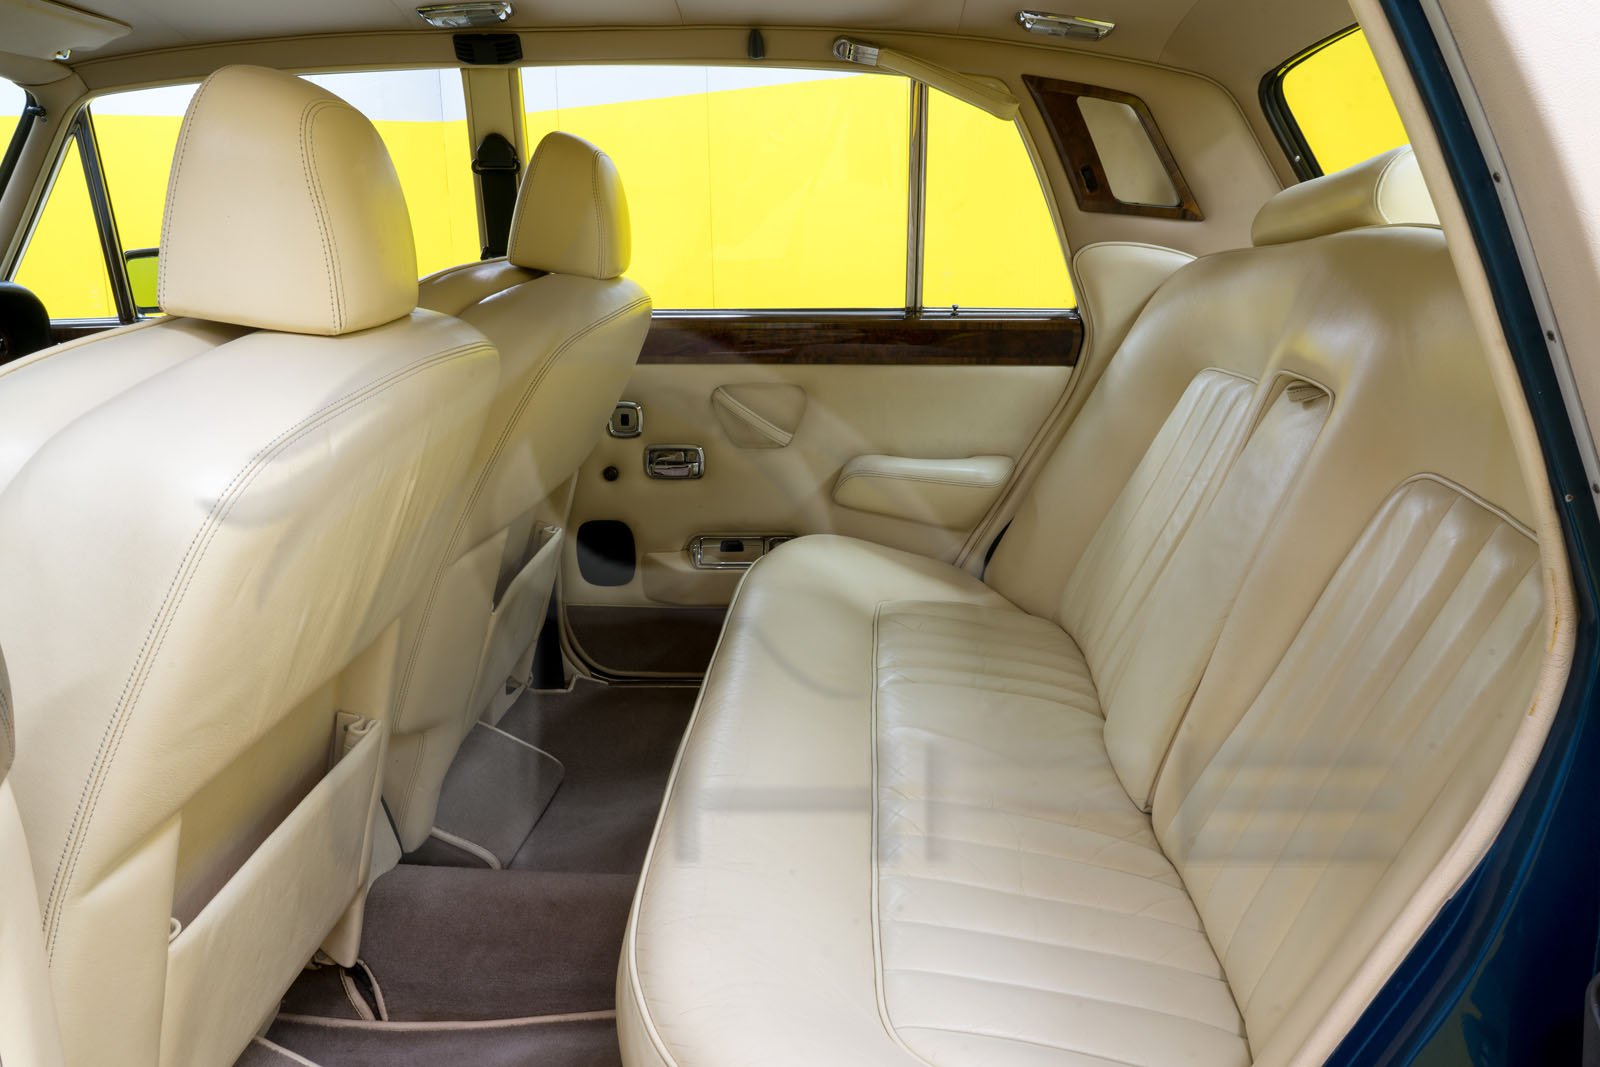 Rolls-Royce Silver Shadow interior - Seats